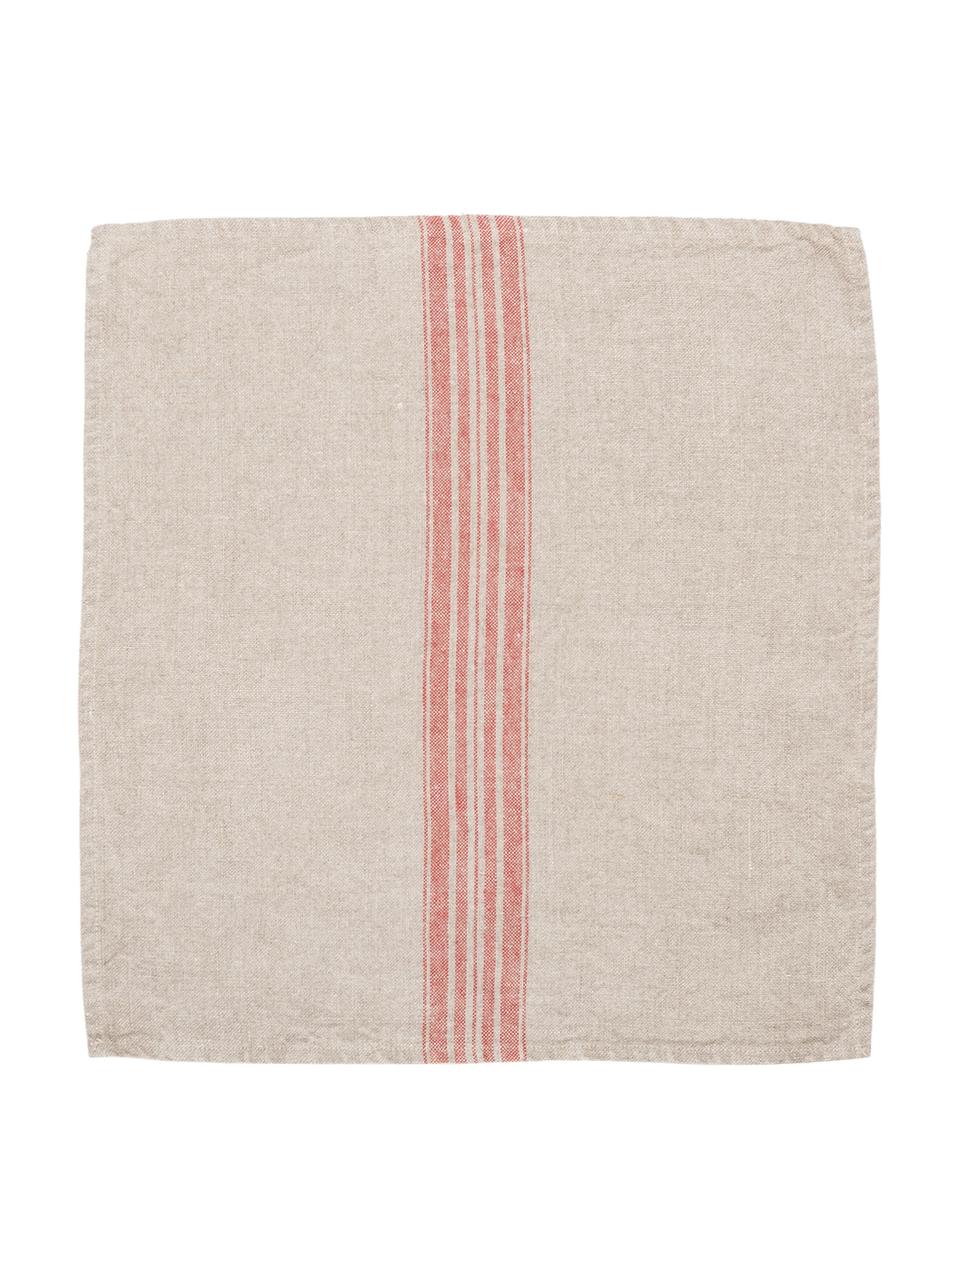 Serviettes de table en lin Jara, 6 pièces, Beige, rouge, larg. 43 x long. 43 cm